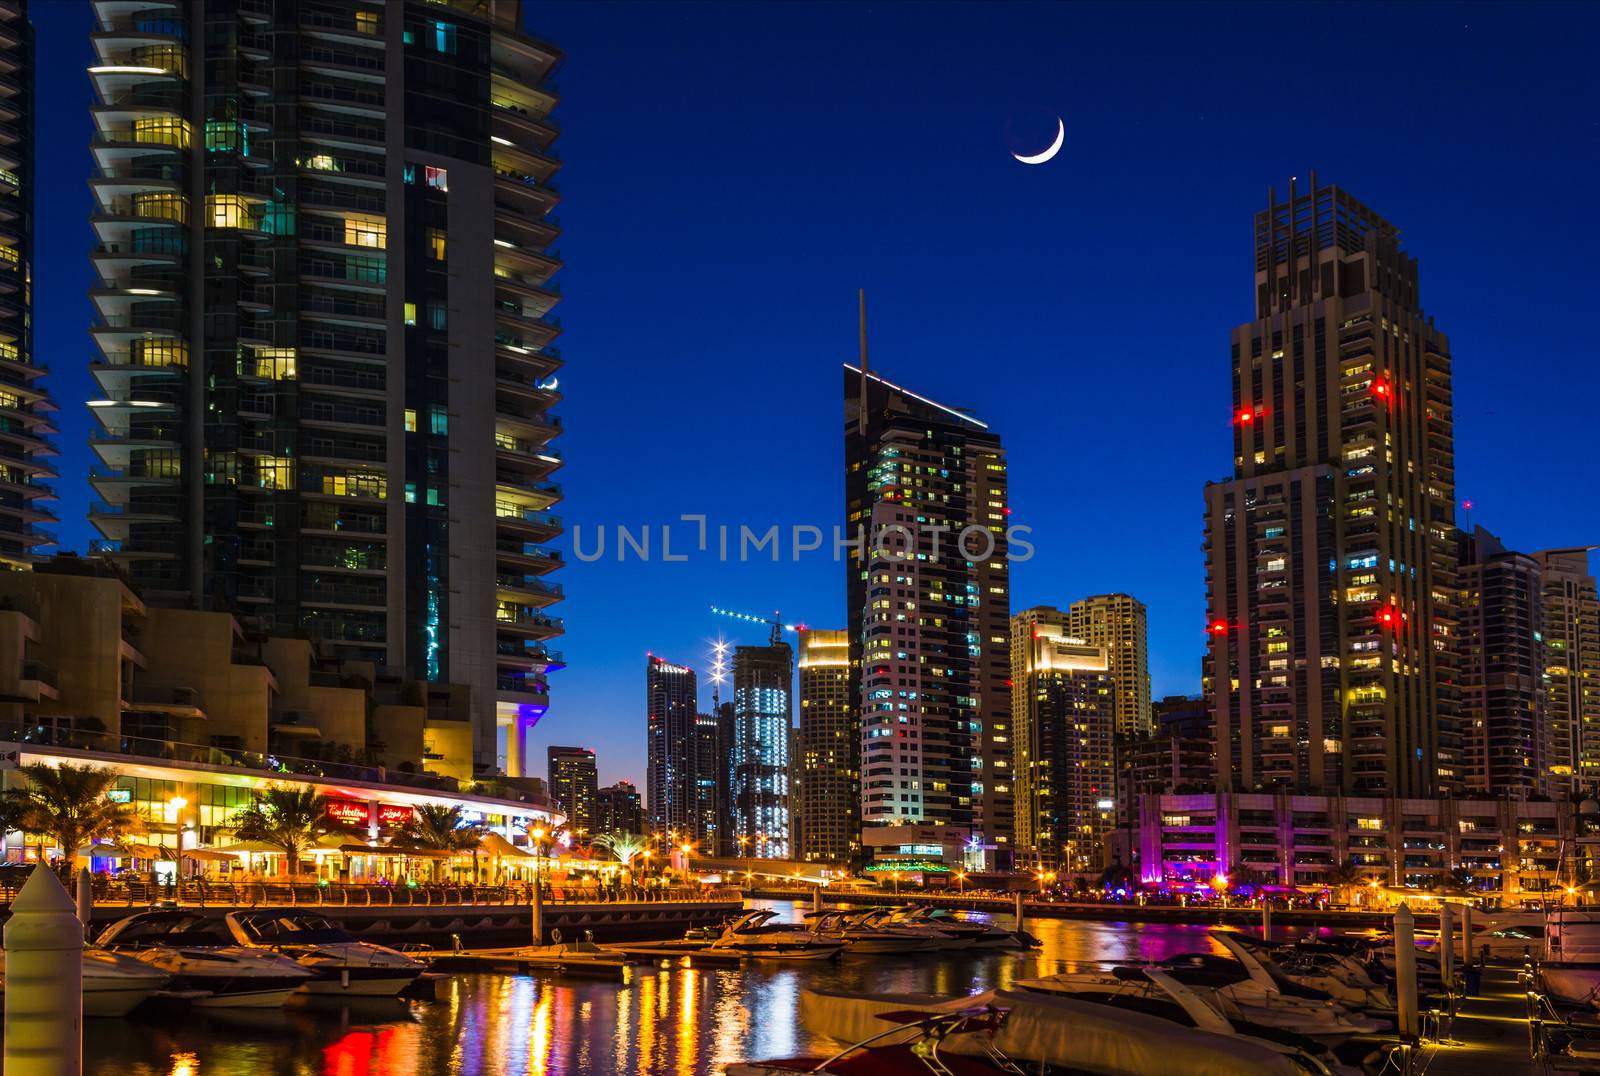 Nightlife in Dubai Marina. UAE. November 16, 2012 by oleg_zhukov